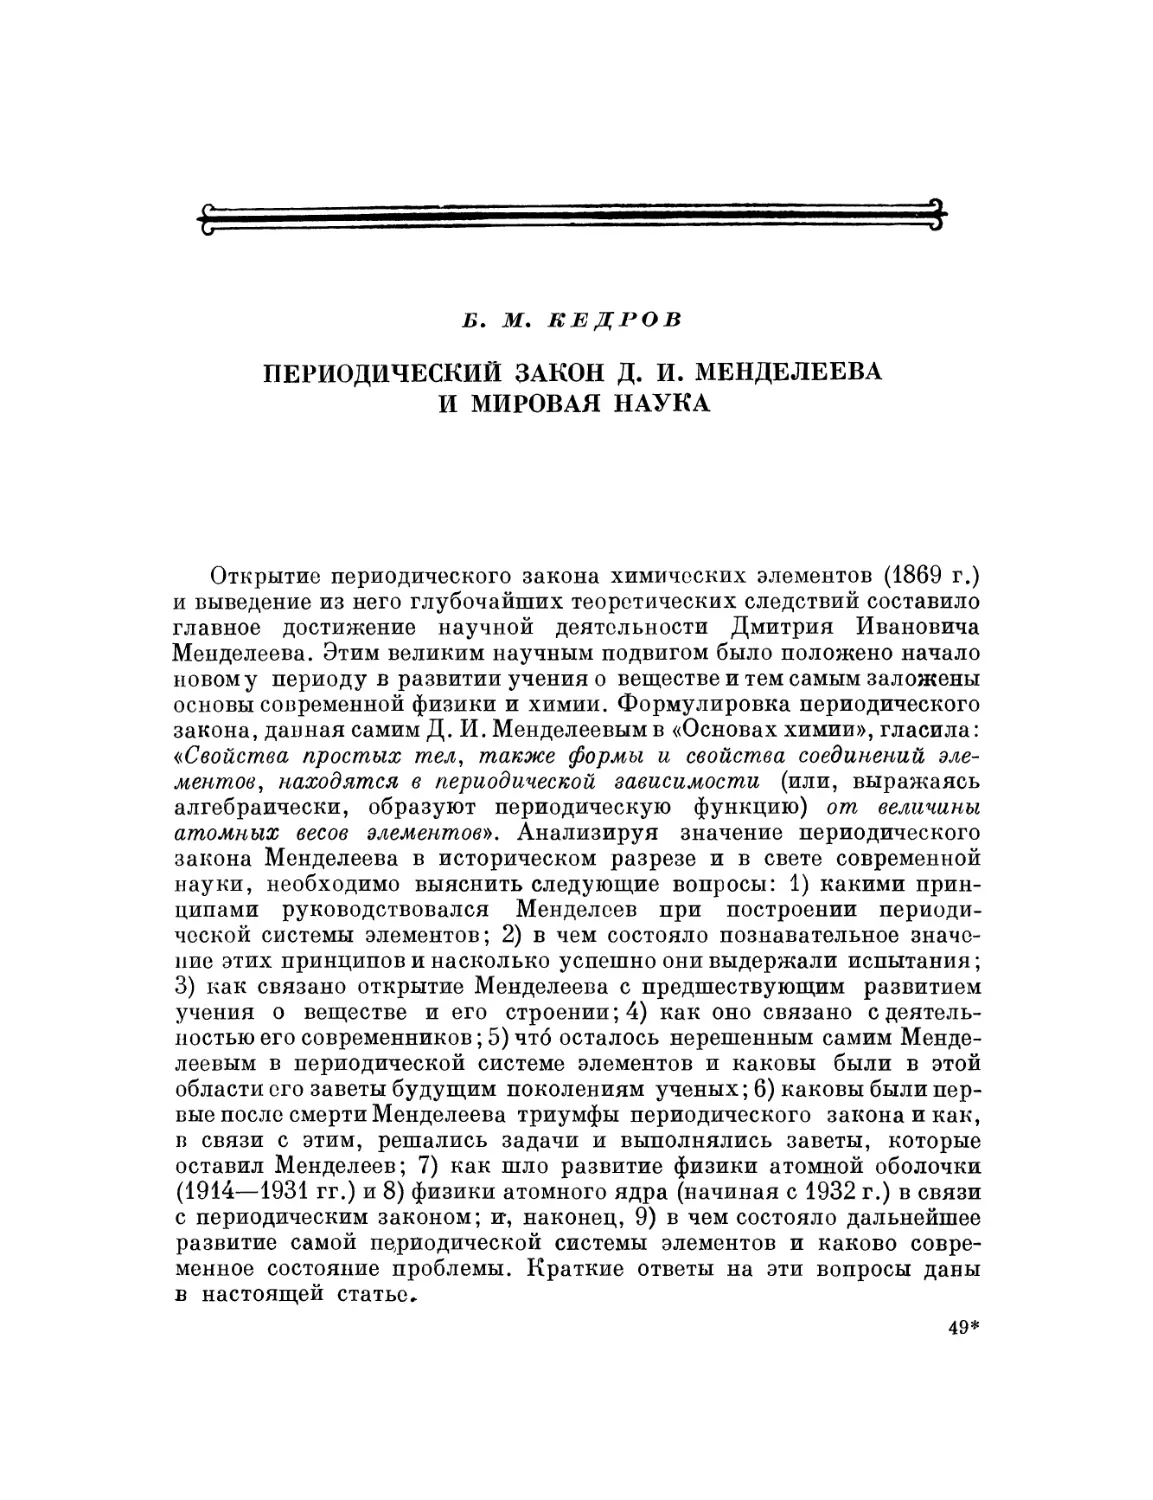 В.М. Кедров. Периодический закон Д. И. Менделеева и мировая наука